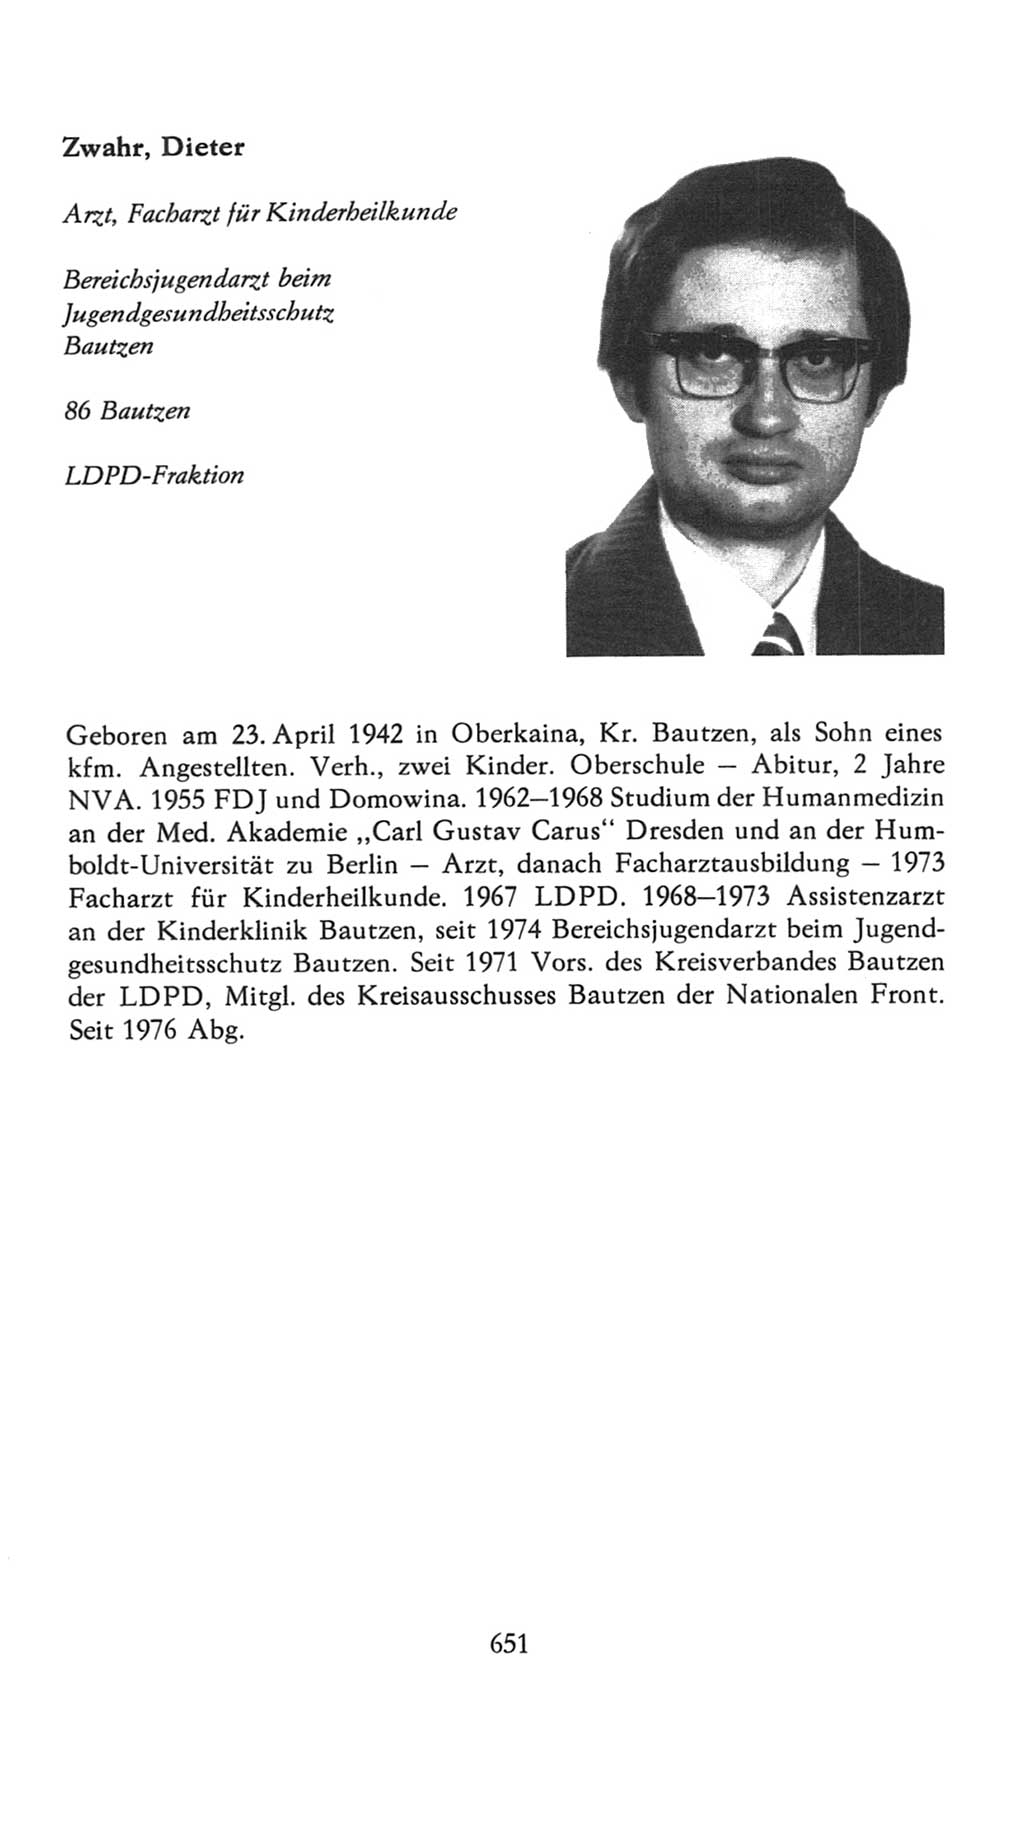 Volkskammer (VK) der Deutschen Demokratischen Republik (DDR), 7. Wahlperiode 1976-1981, Seite 651 (VK. DDR 7. WP. 1976-1981, S. 651)